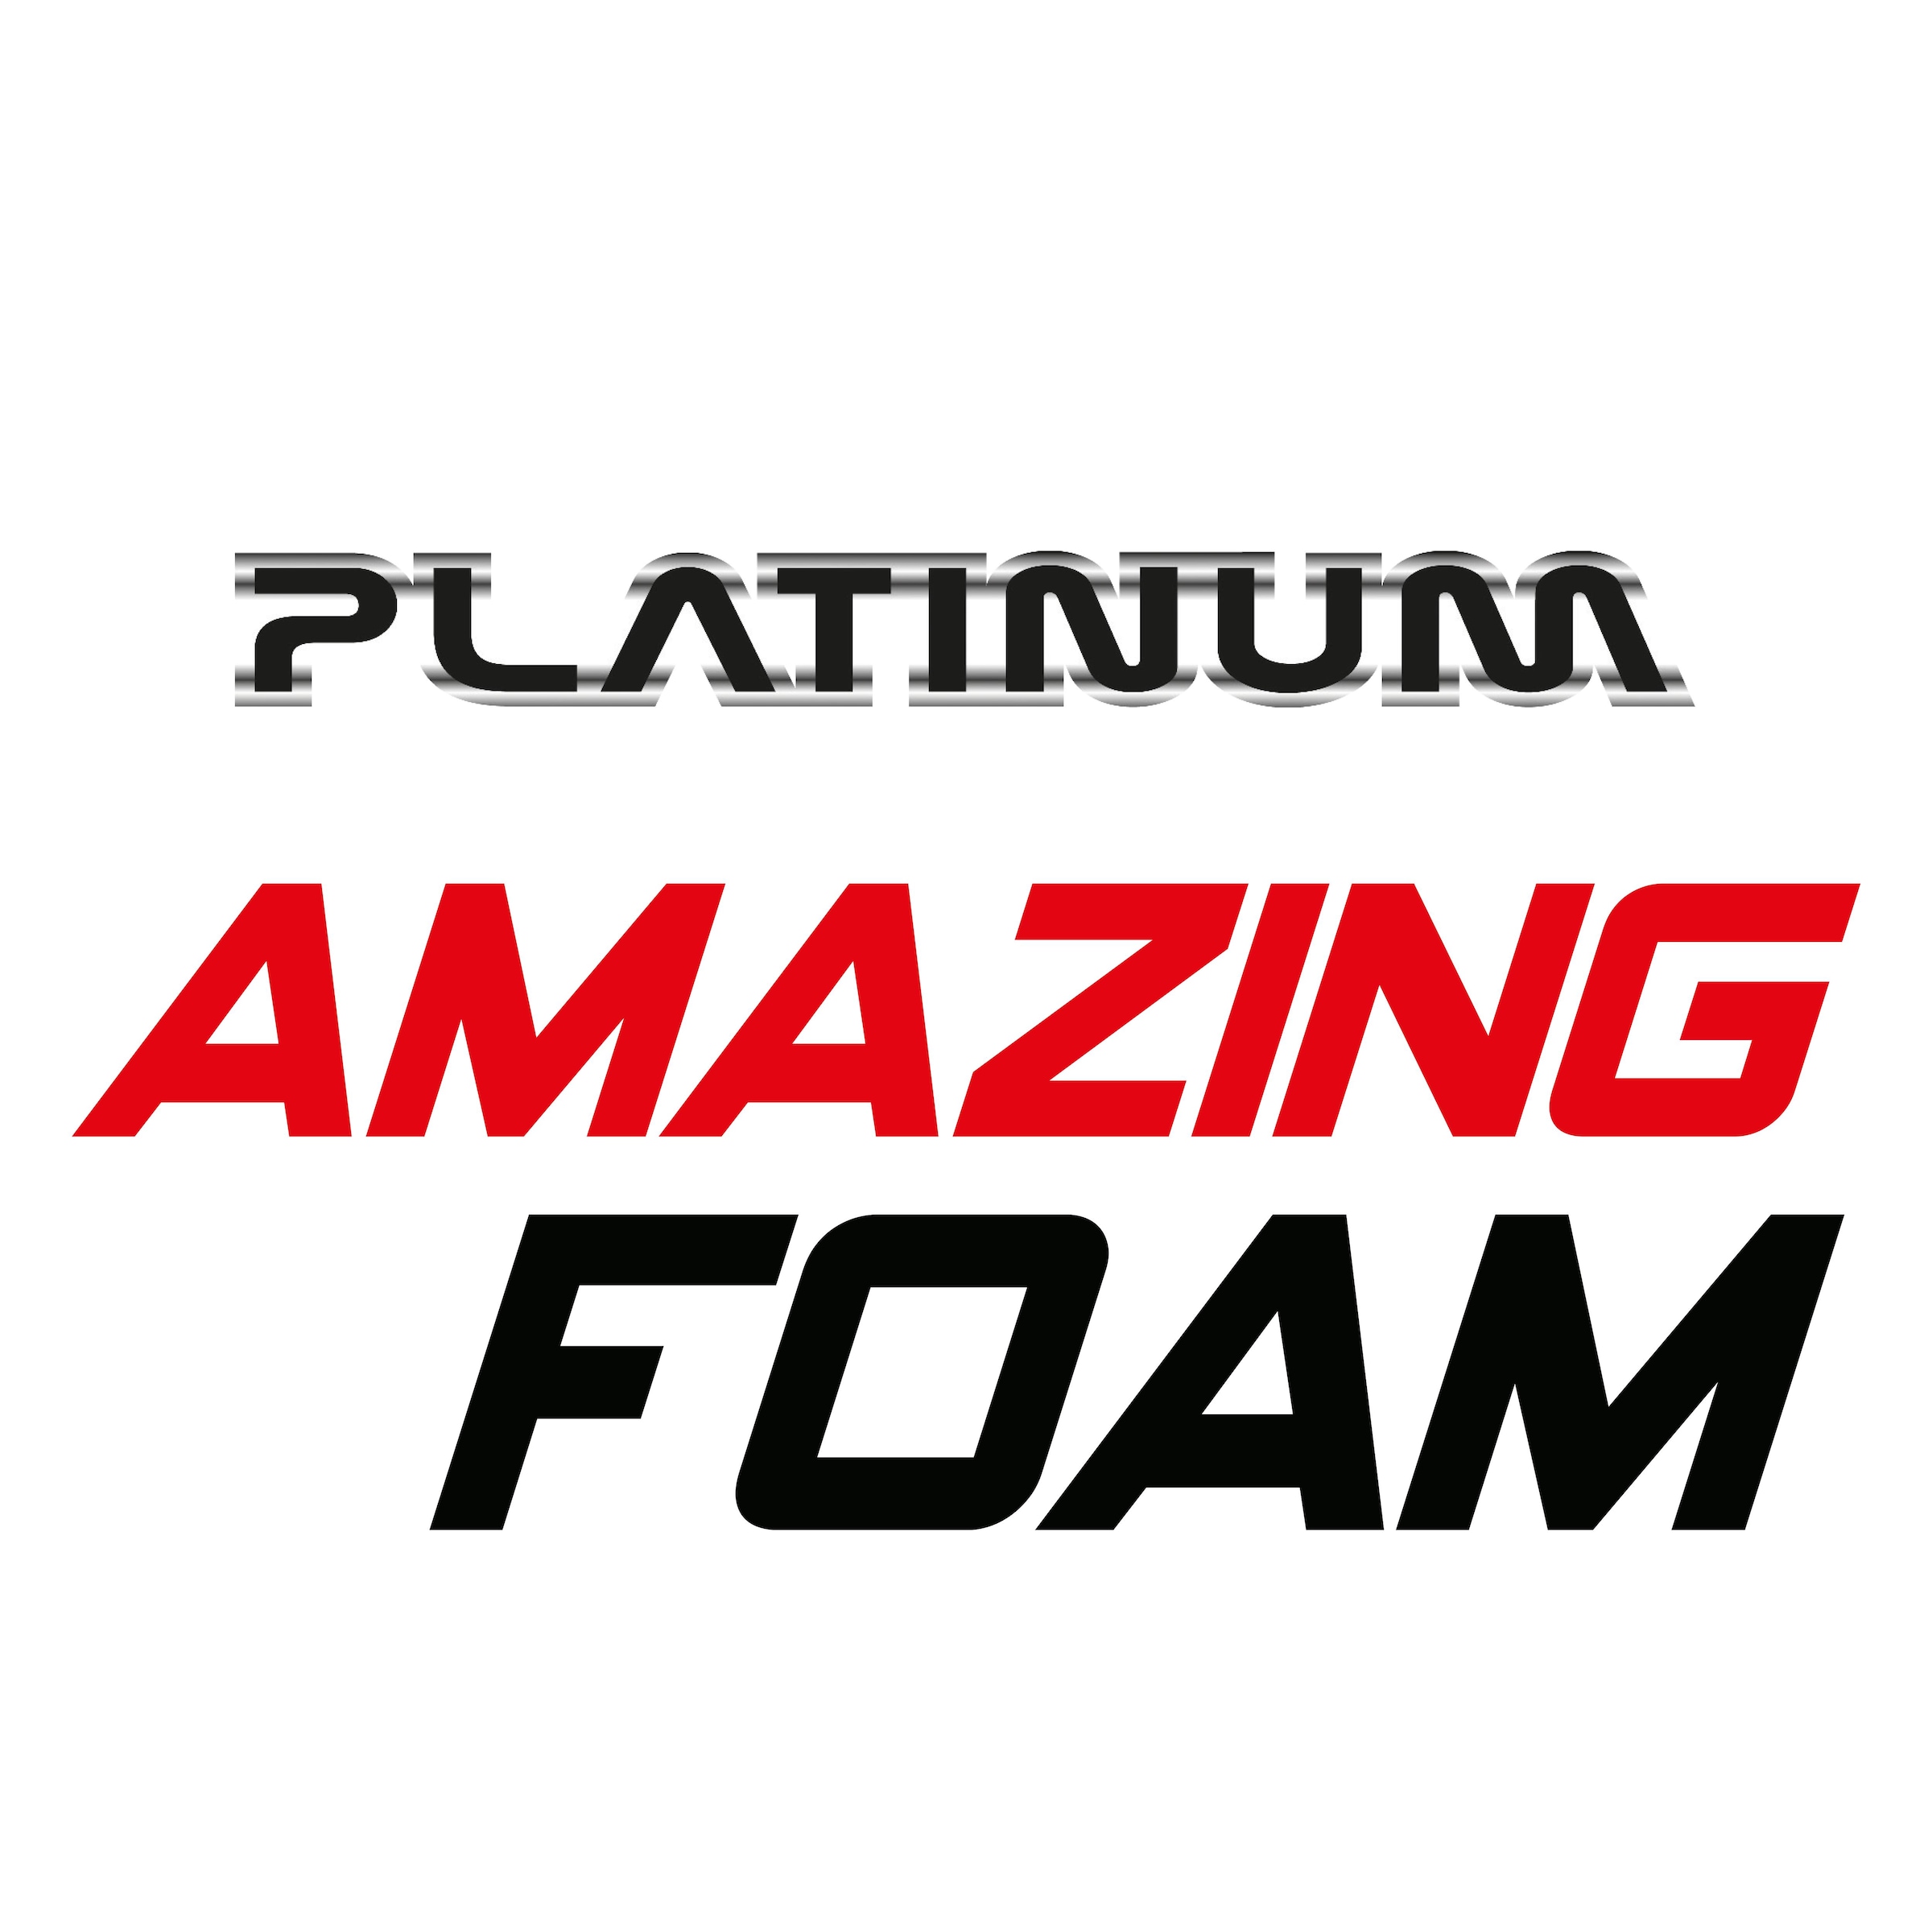 MediaShop Auto-Reinigungsmittel »Platinum Amazing Foam«, (Set), inkl. Sprühflasche und Handschuh